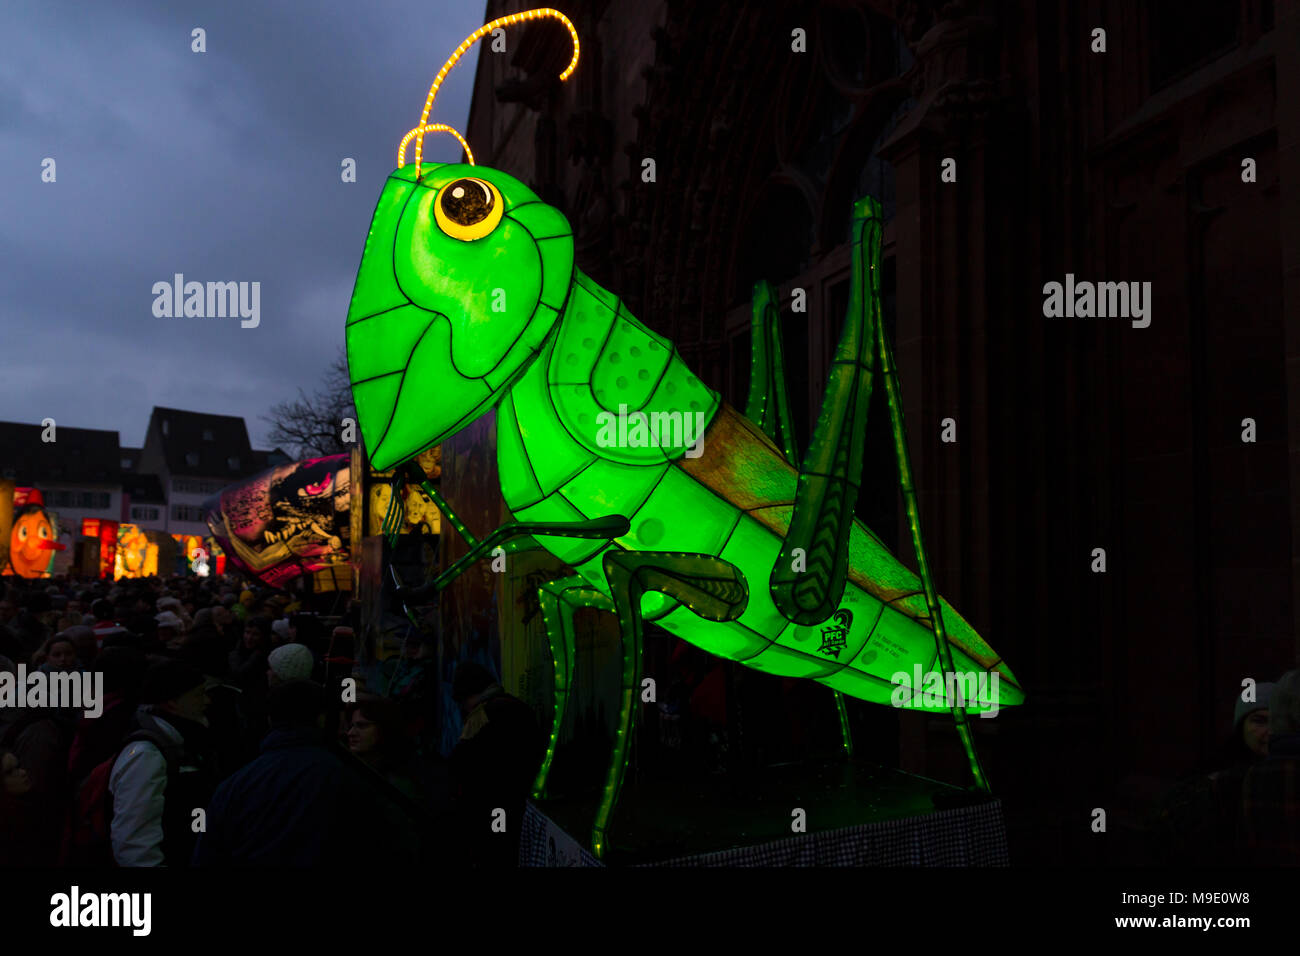 Muensterplatz, Bâle, Suisse - 20 février 2018. Carnaval de Bâle. Beau carnaval illuminé lanterne en forme d'une sauterelle verte Banque D'Images